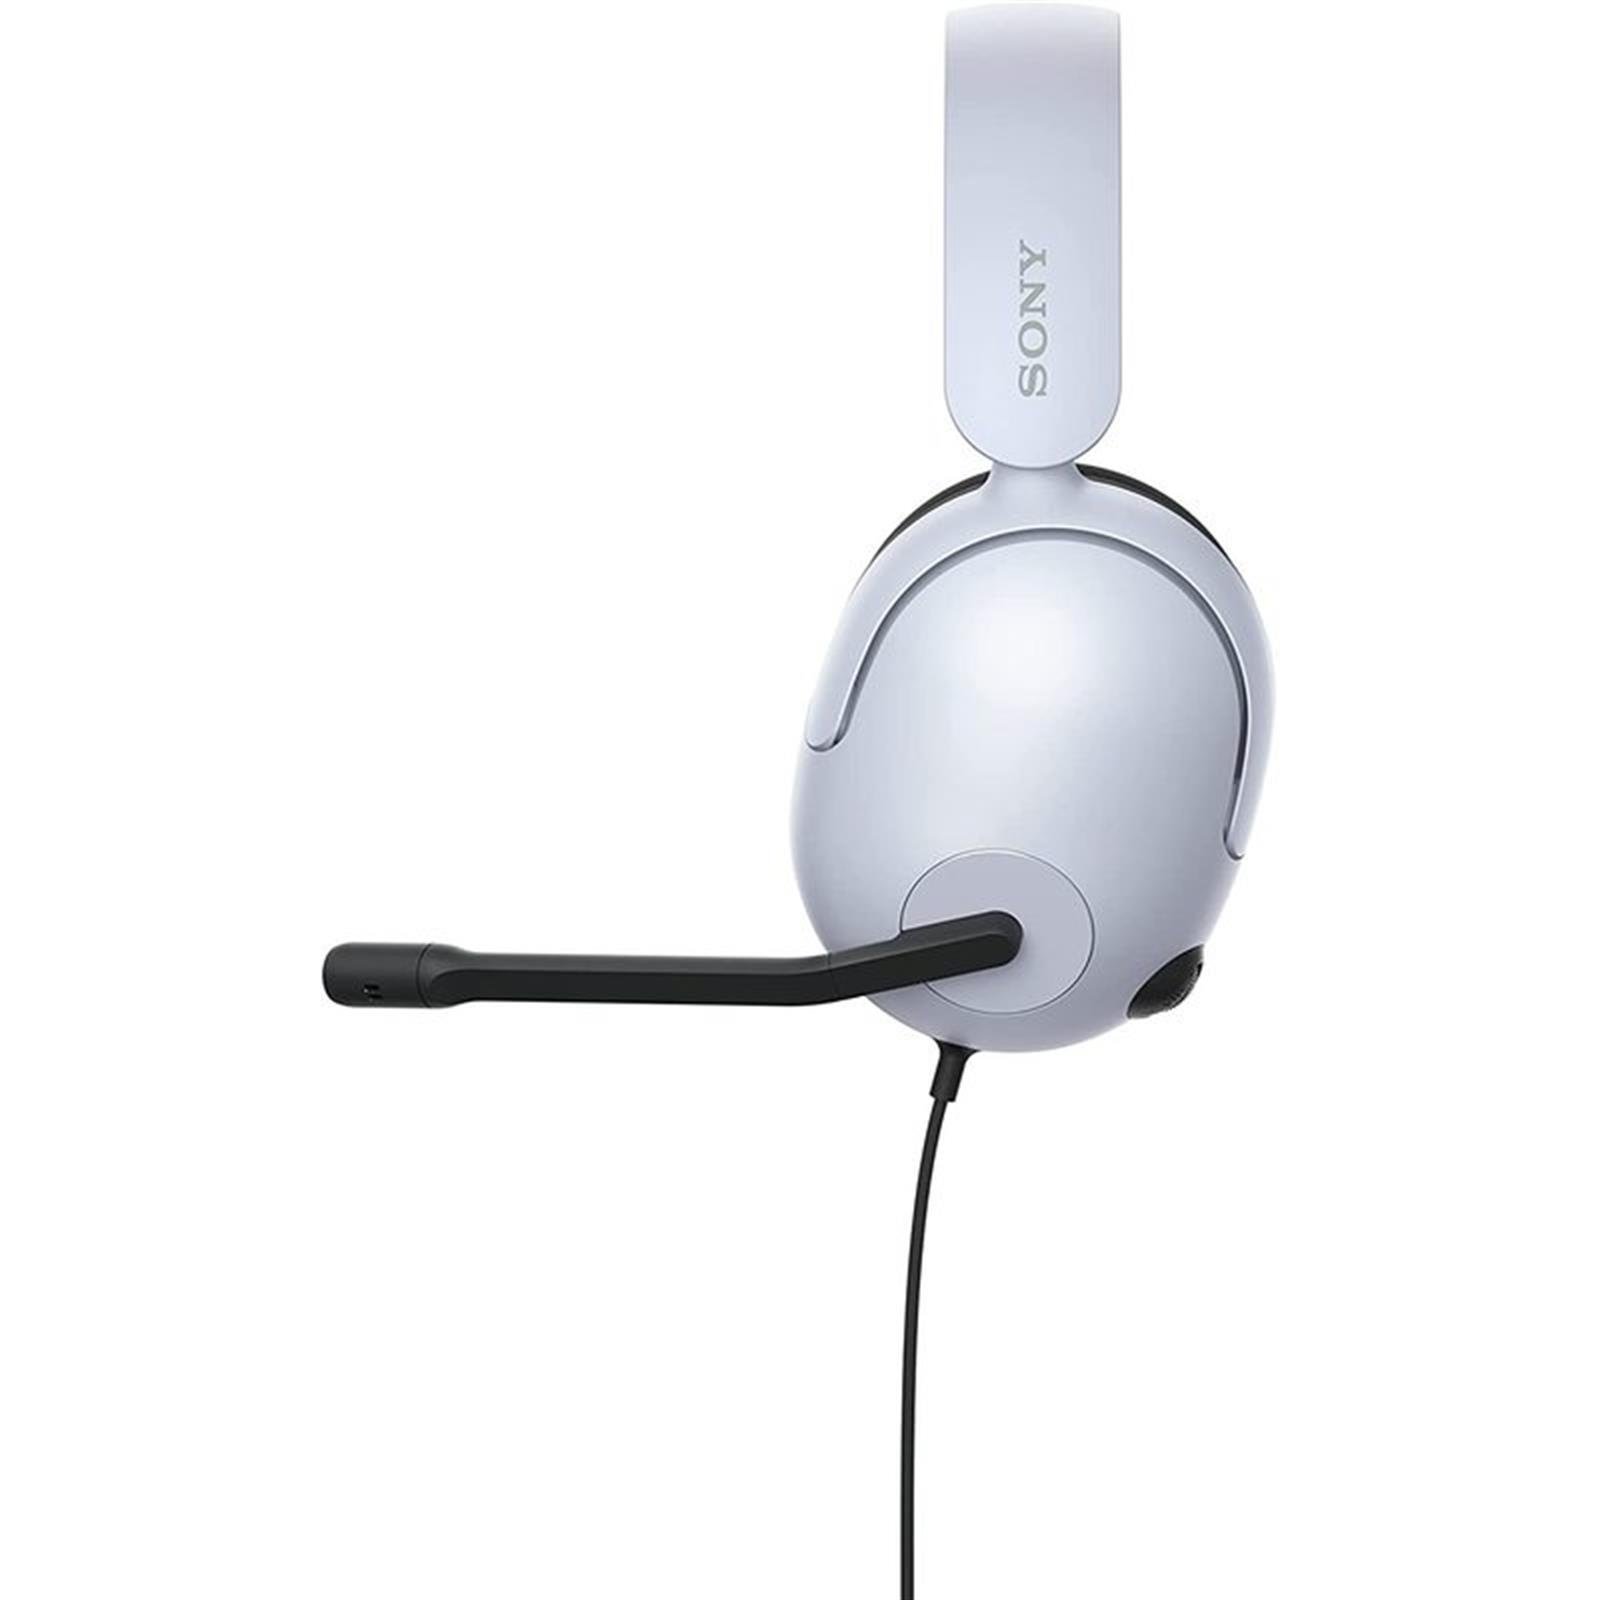 Sony Inzone H3 Kablolu Gaming Kulaklık - 360 Spatial Sound - Konforlu  Yumuşak Kafa Bandı - Playstation5 Için Uygun - Nethouse